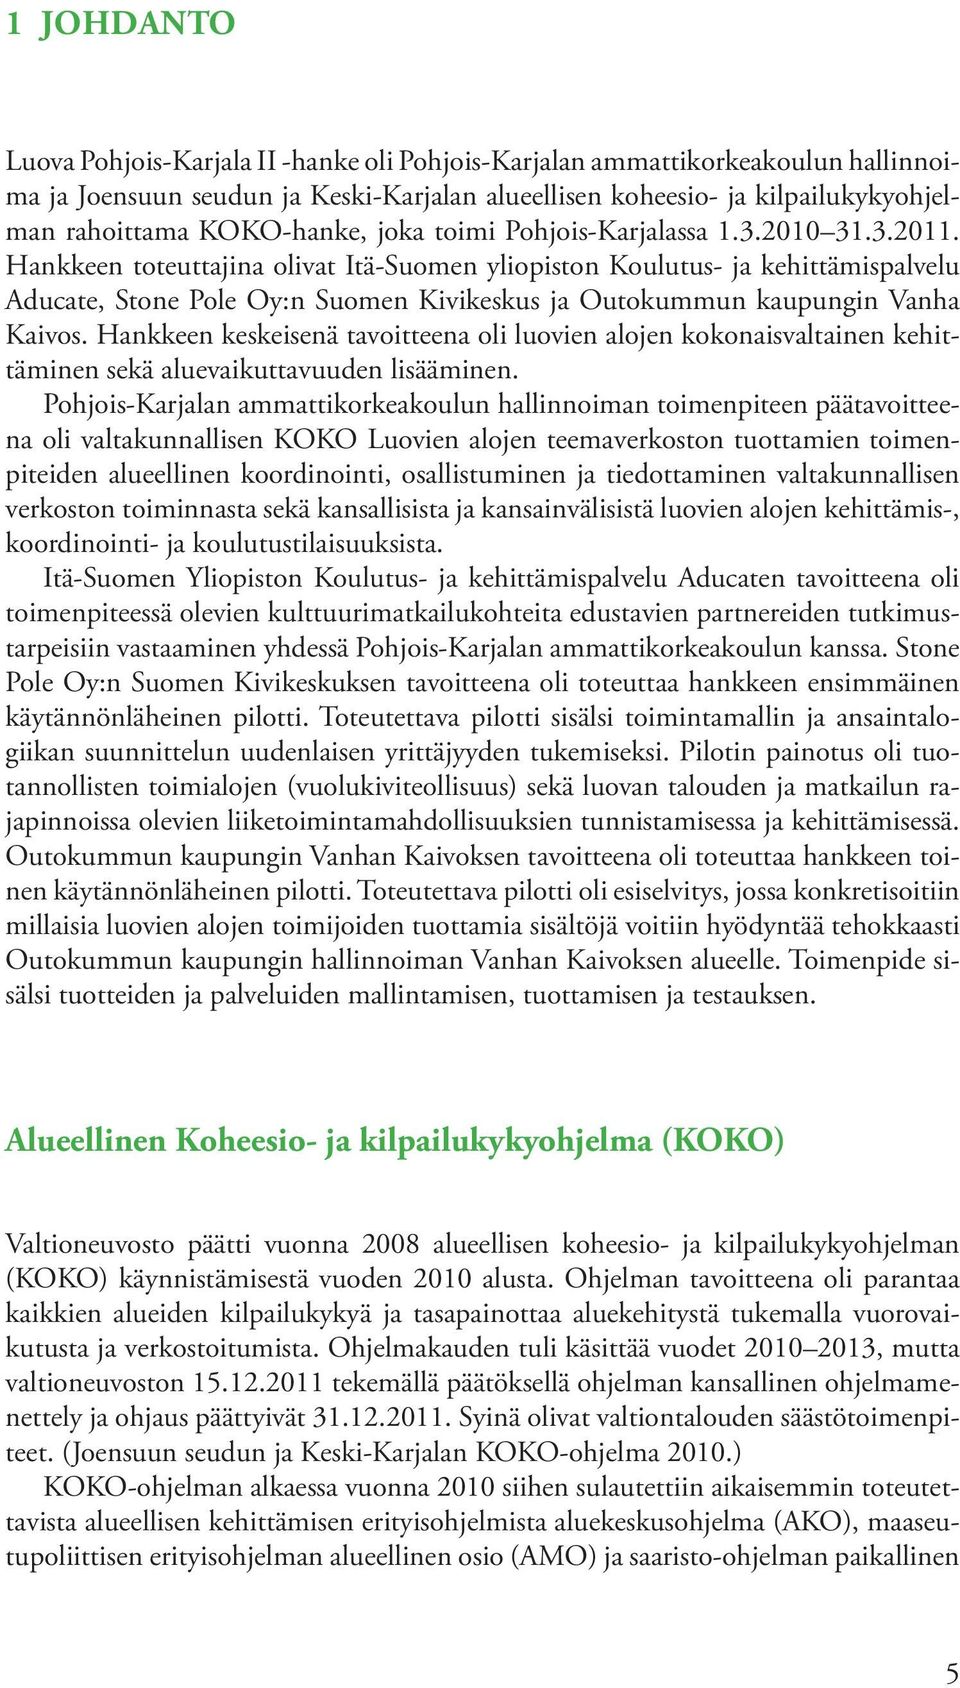 Hankkeen toteuttajina olivat Itä-Suomen yliopiston Koulutus- ja kehittämispalvelu Aducate, Stone Pole Oy:n Suomen Kivikeskus ja Outokummun kaupungin Vanha Kaivos.